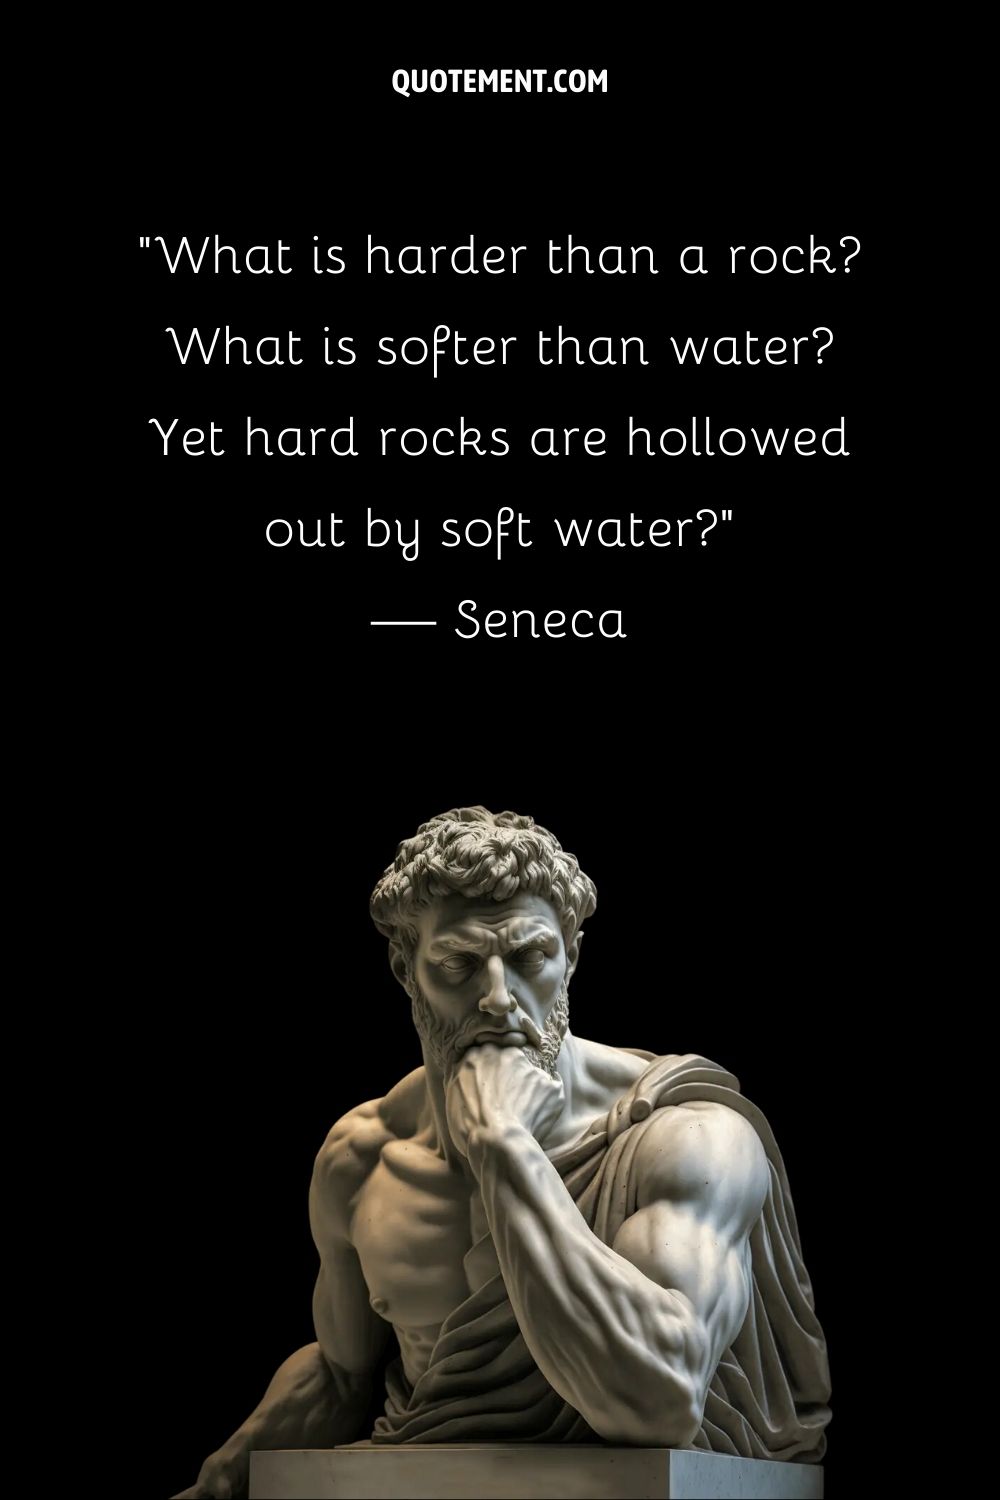 "Lo que es más duro que una roca Lo que es más blando que el agua Sin embargo, las rocas duras son ahuecadas por el agua blanda" - Séneca